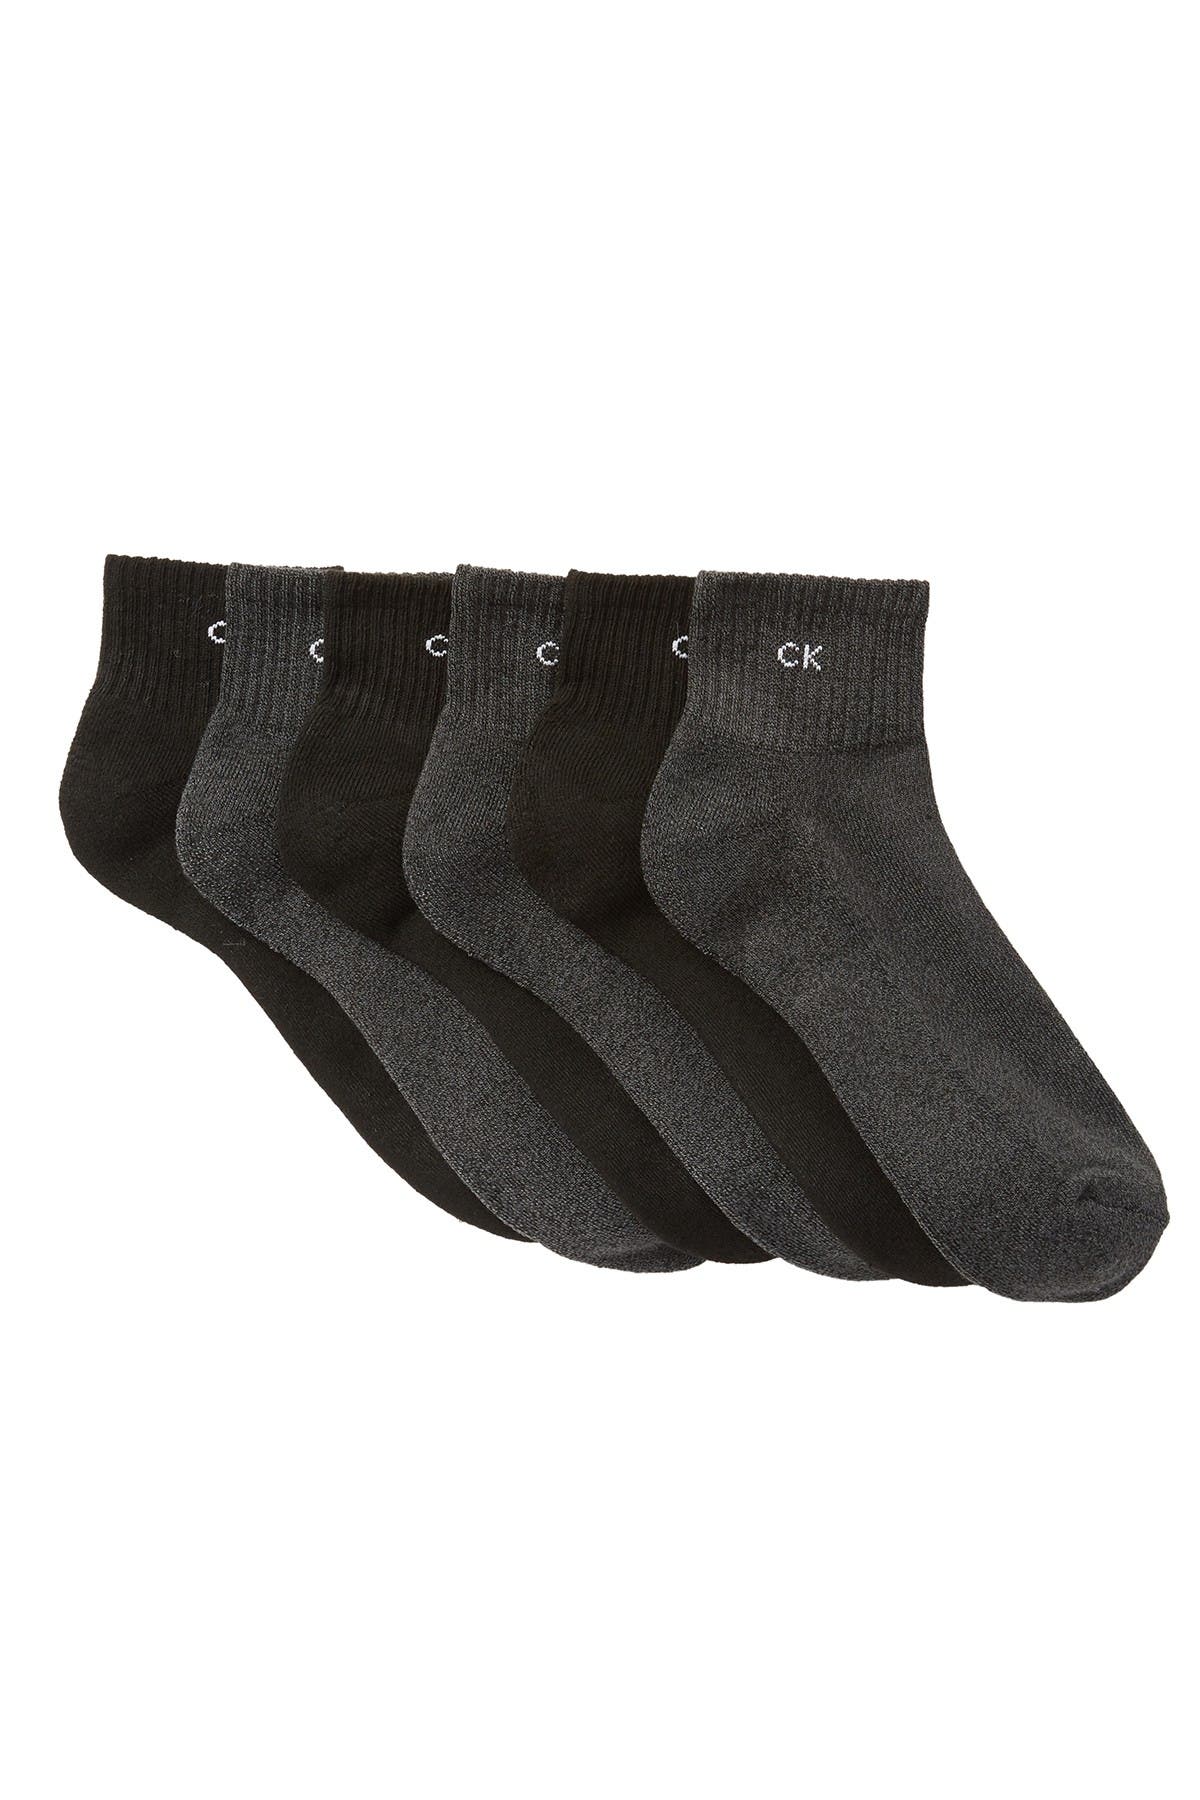 Calvin Klein | Basic Sport Quarter Crew Socks - Pack of 6 | Nordstrom Rack